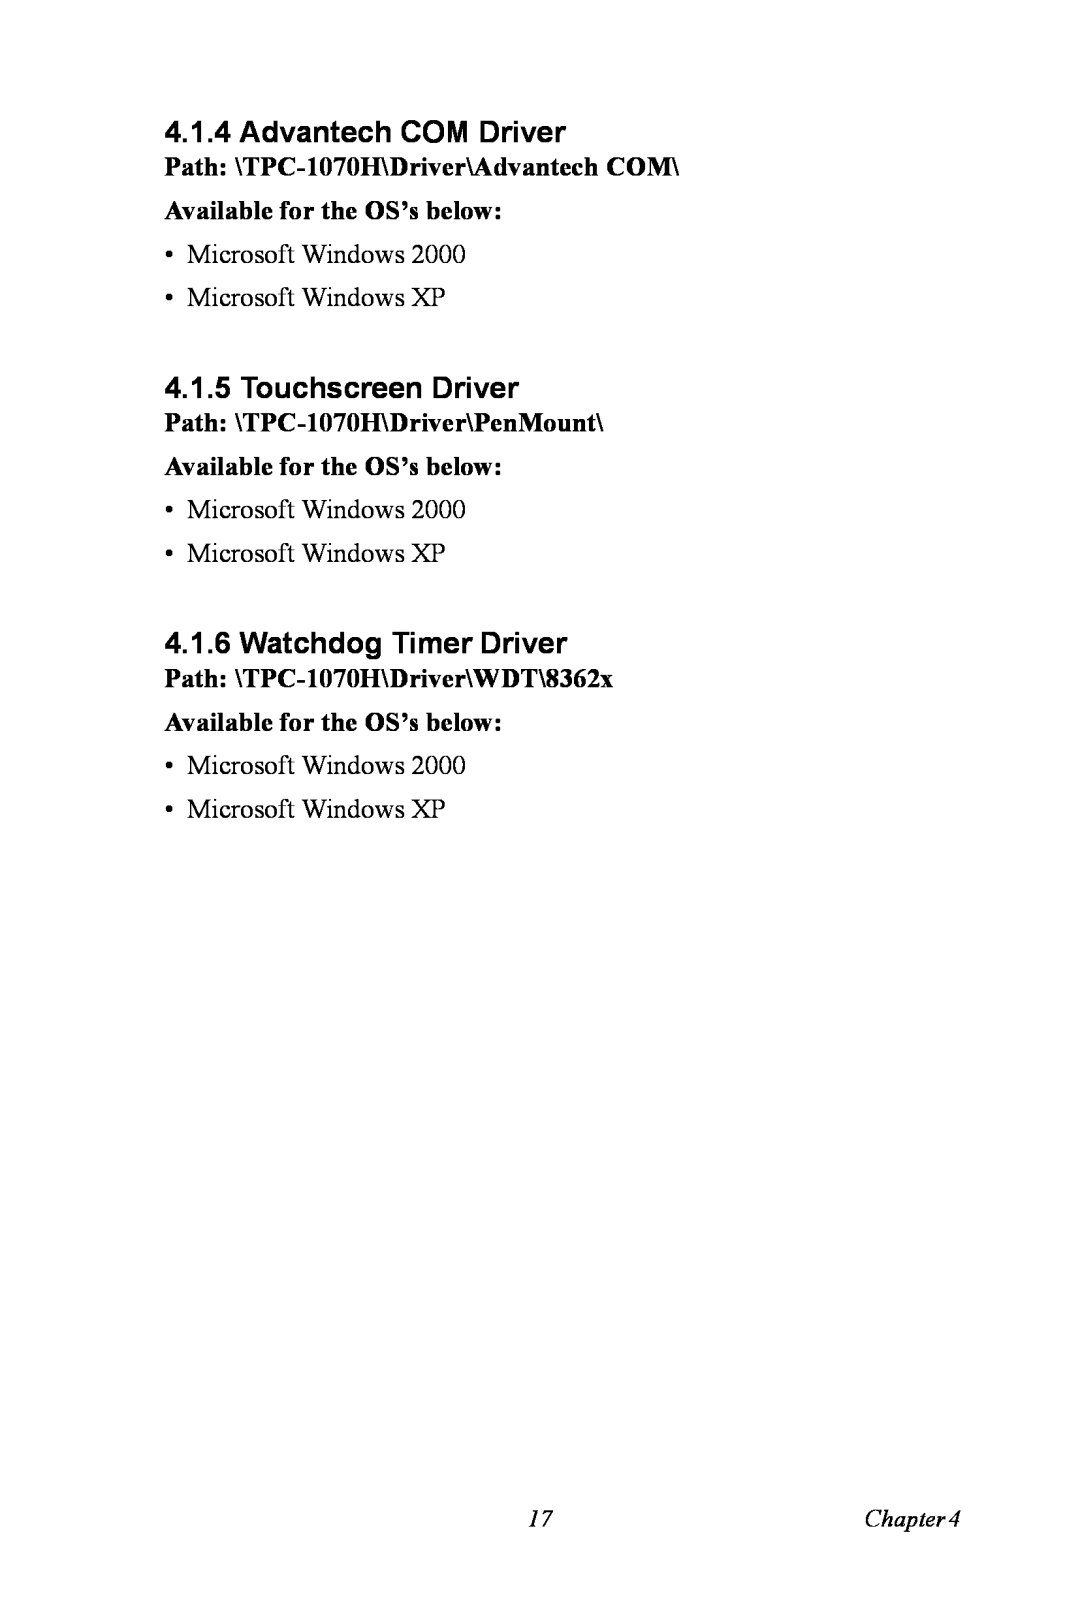 Intel TPC-1070 user manual Advantech COM Driver, Touchscreen Driver, Watchdog Timer Driver 